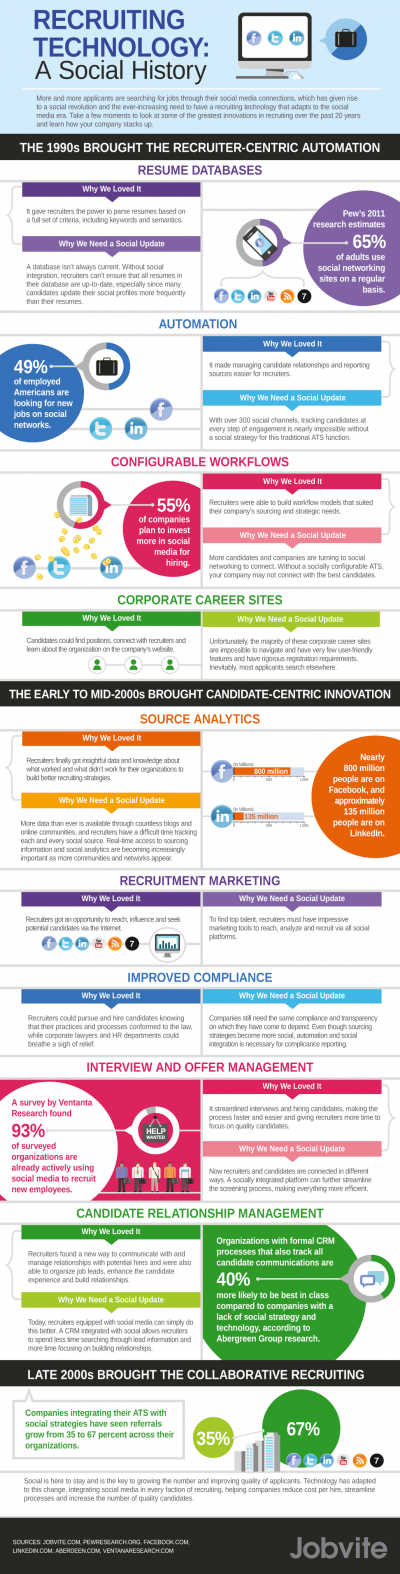 Die Geschichte der Recruiting-Technologie Infographic